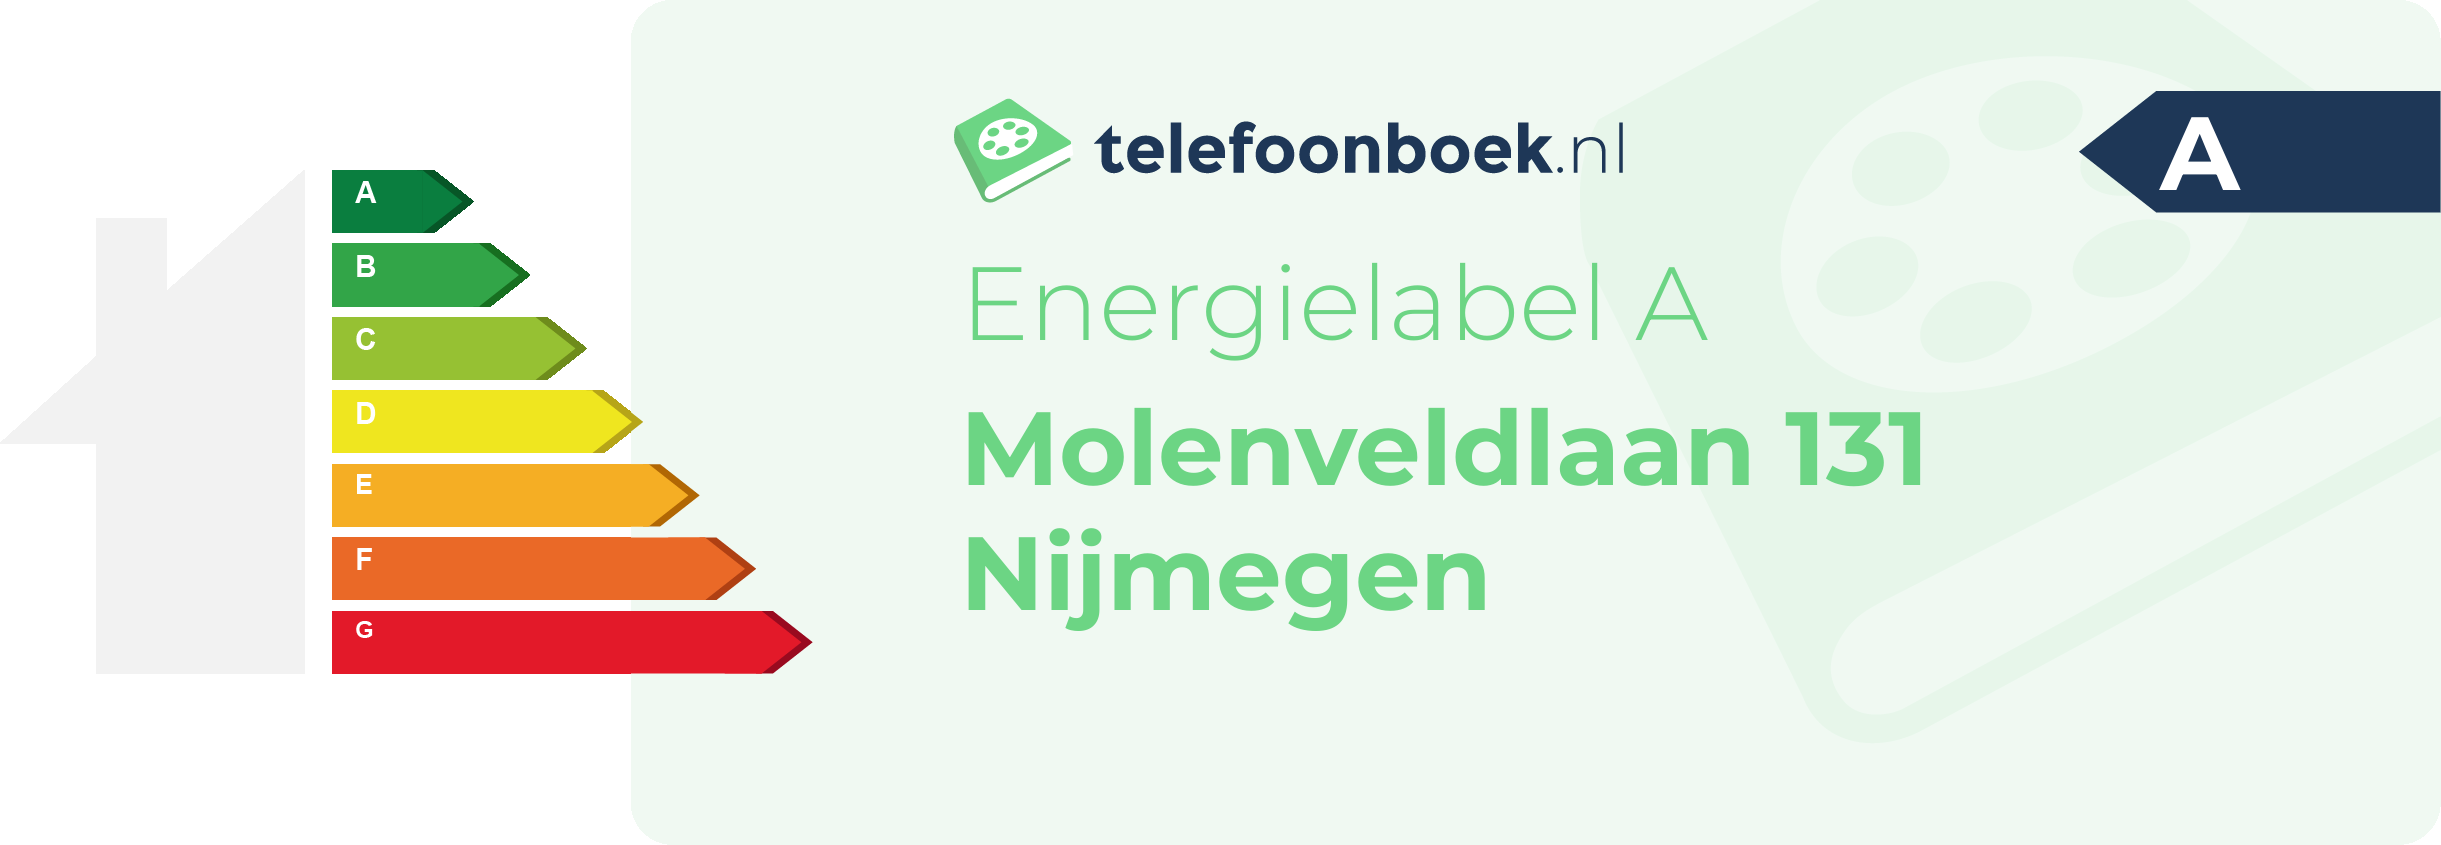 Energielabel Molenveldlaan 131 Nijmegen